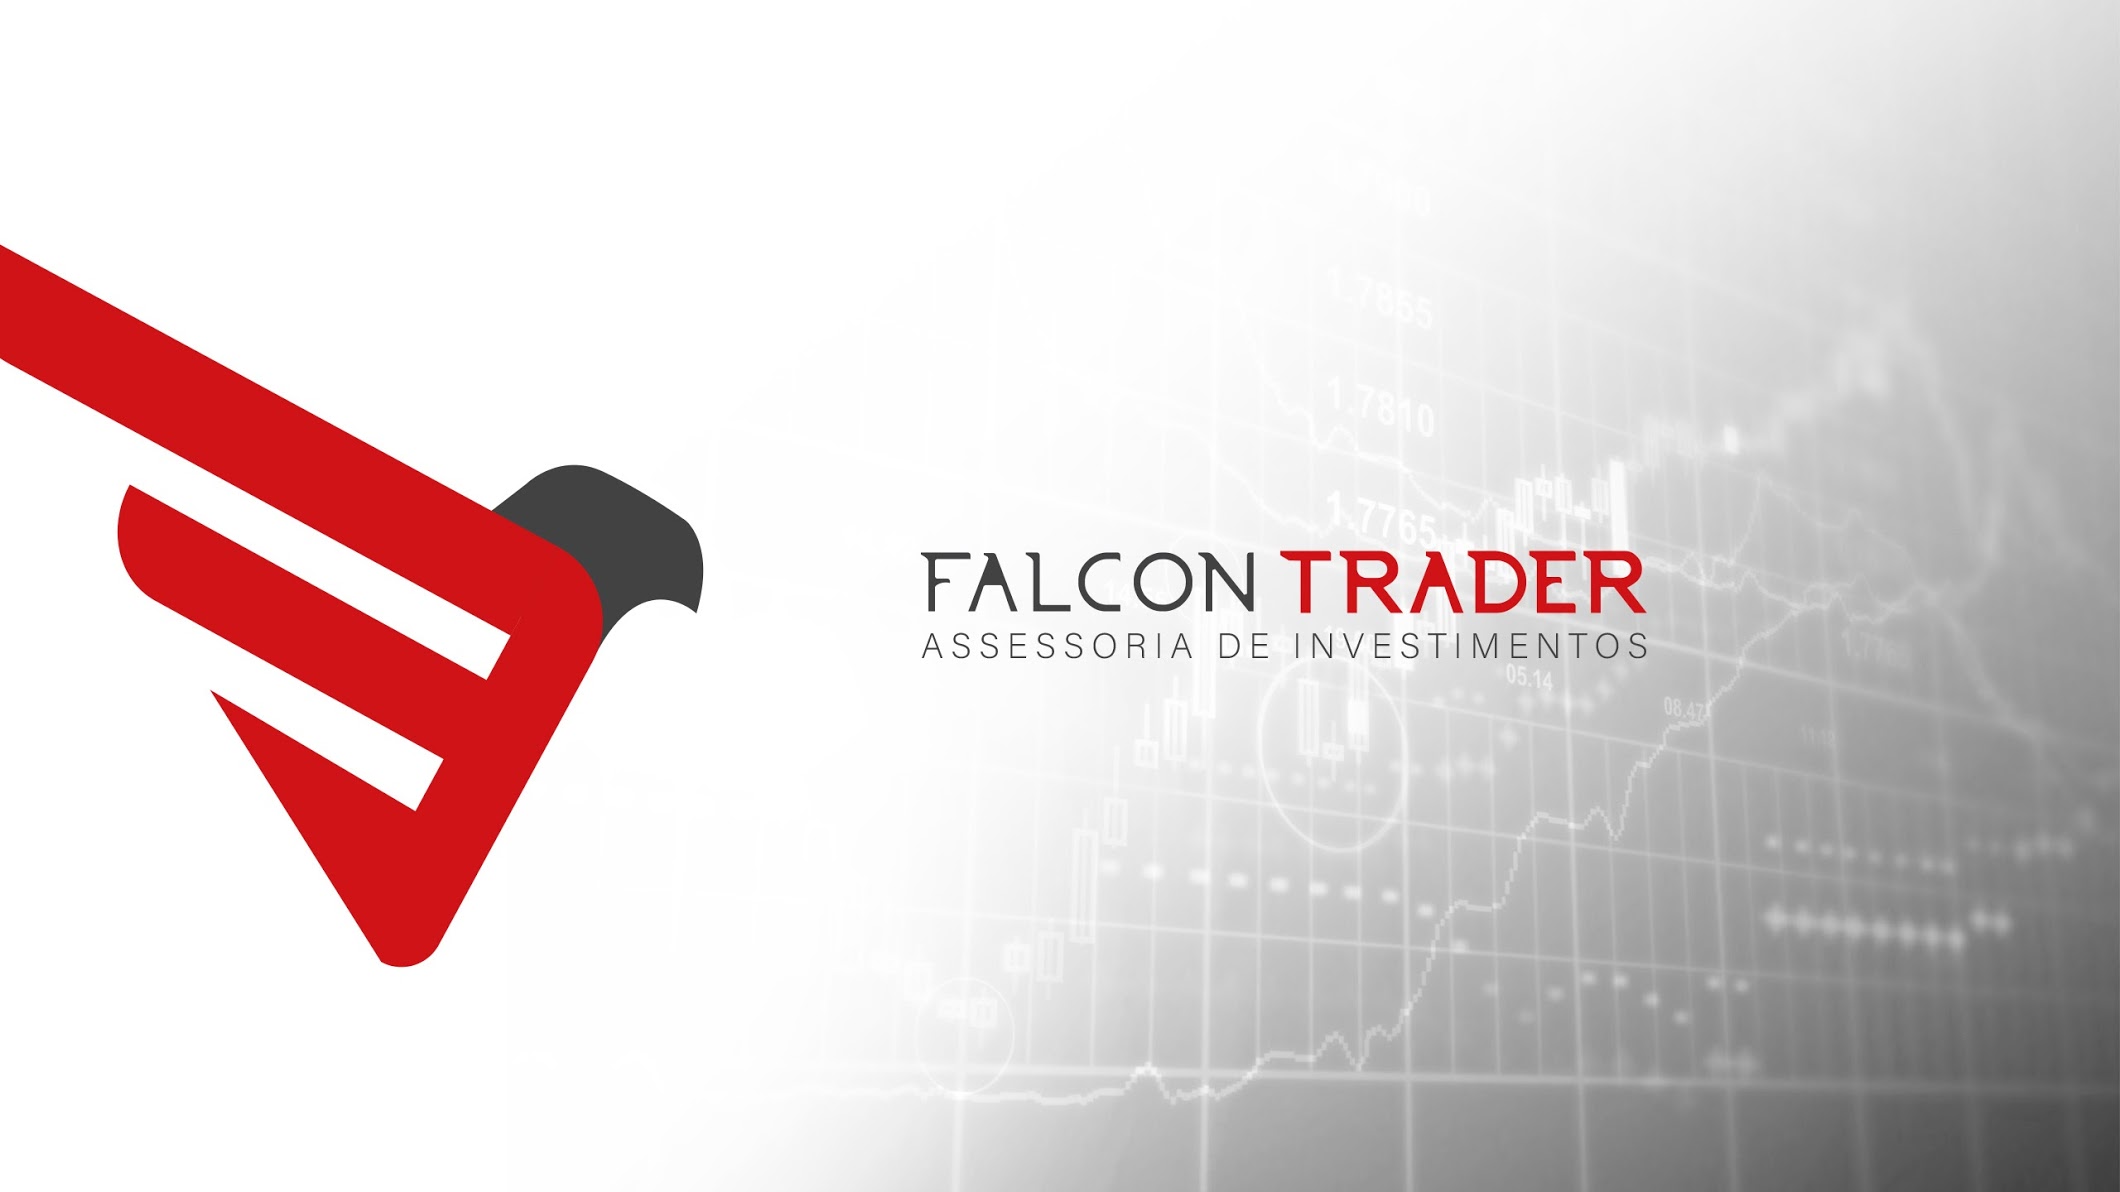 Falcon Trader - Formação em Dólar Futuro